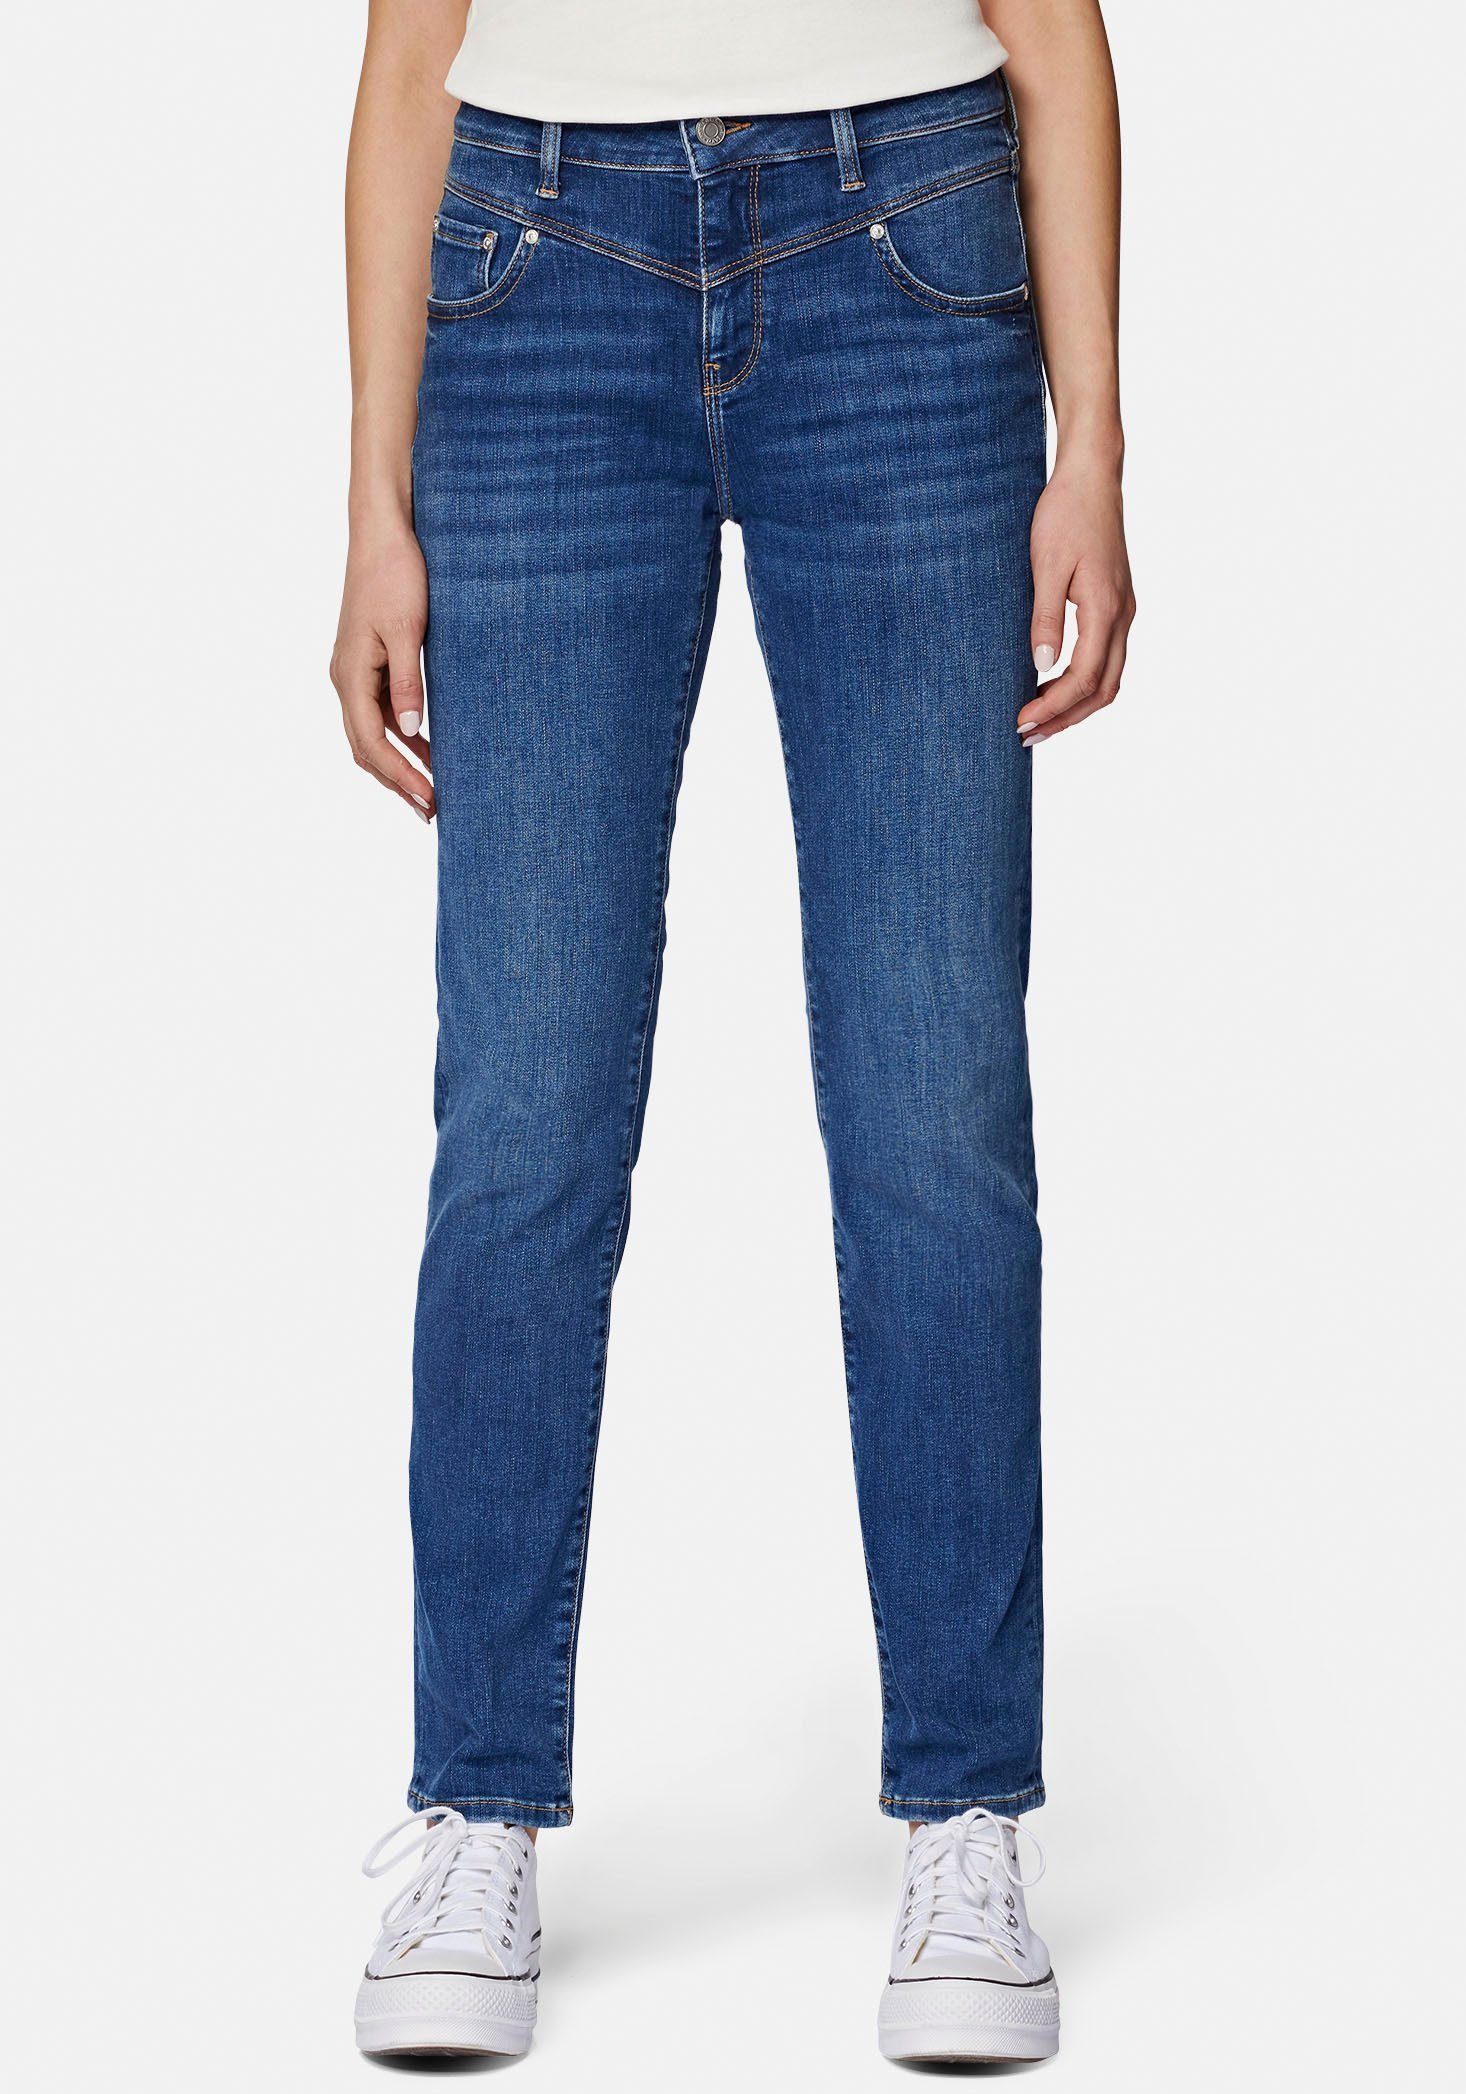 Mavi Slim-fit-Jeans trageangenehmer Stretchdenim dank hochwertiger Verarbeitung mid blue